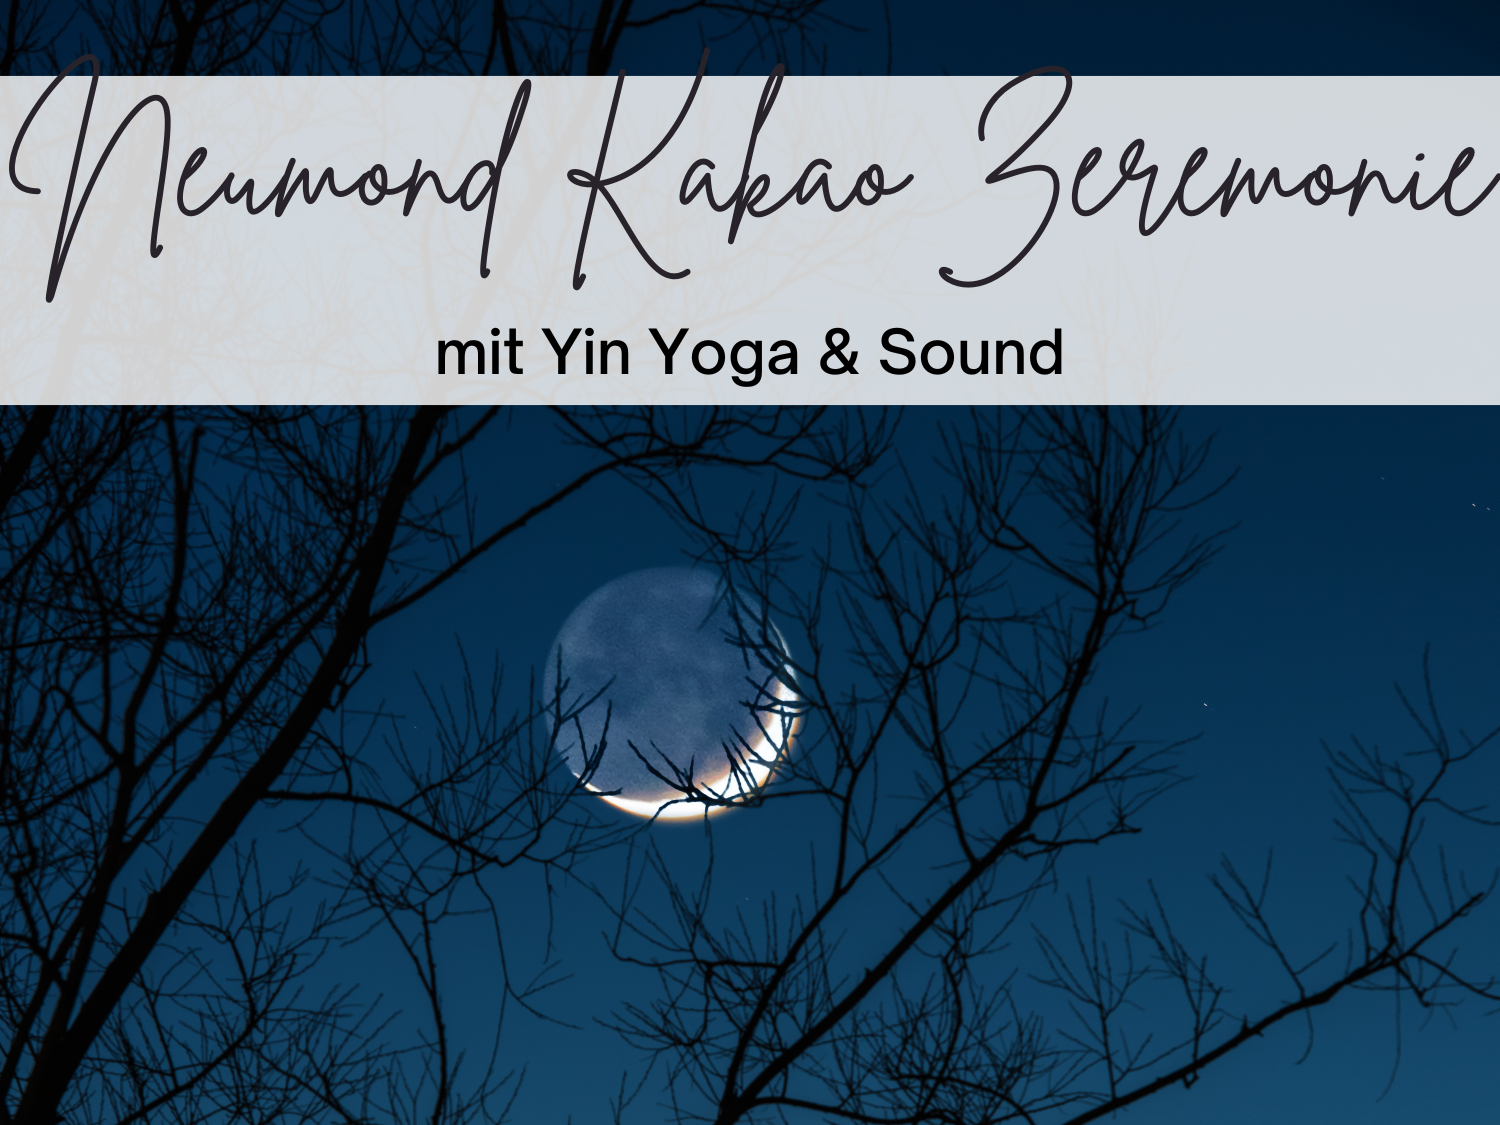 Vollmond Kakao Zeremonie mit Yin Yoga und Sound Healing